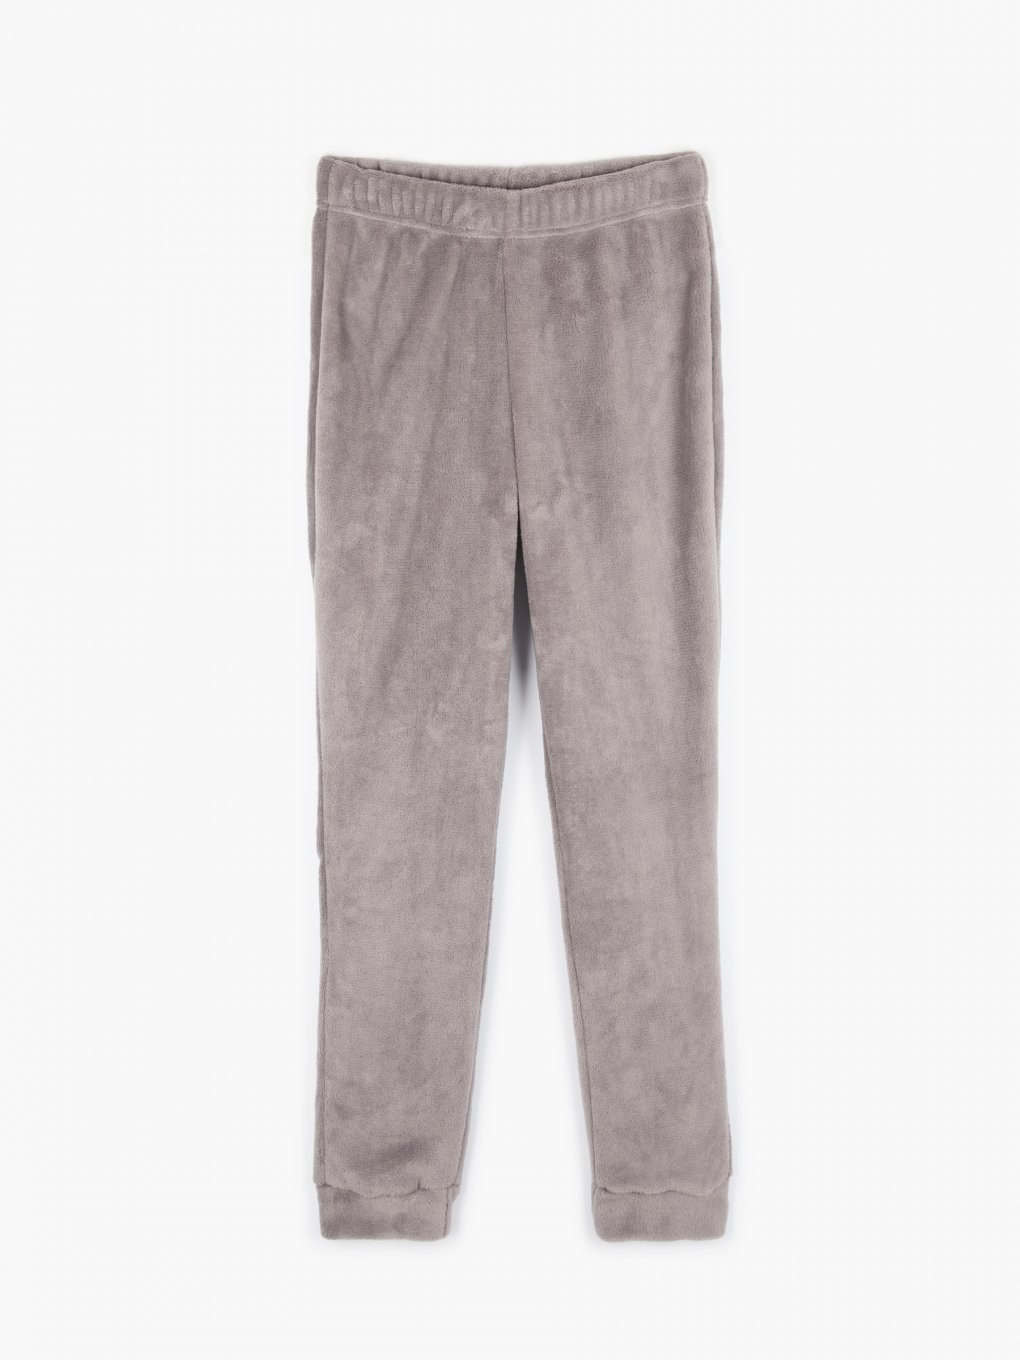 Flísové pyžamové kalhoty dámské